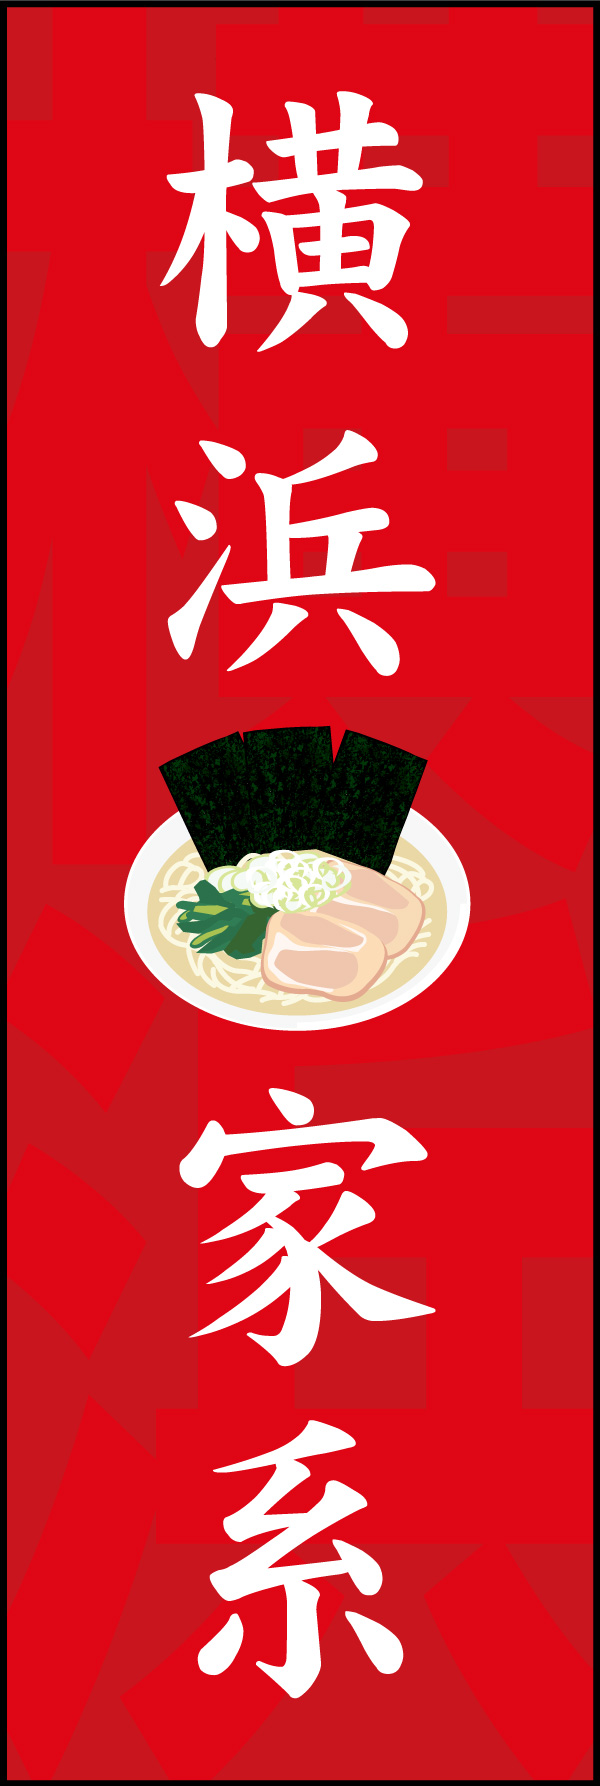 家系拉麺(らーめん) 02「横浜家系」ののぼりです。家系ラーメン発祥の「横浜」を入れながらシンプルなデザインにしました。(Y.M) 